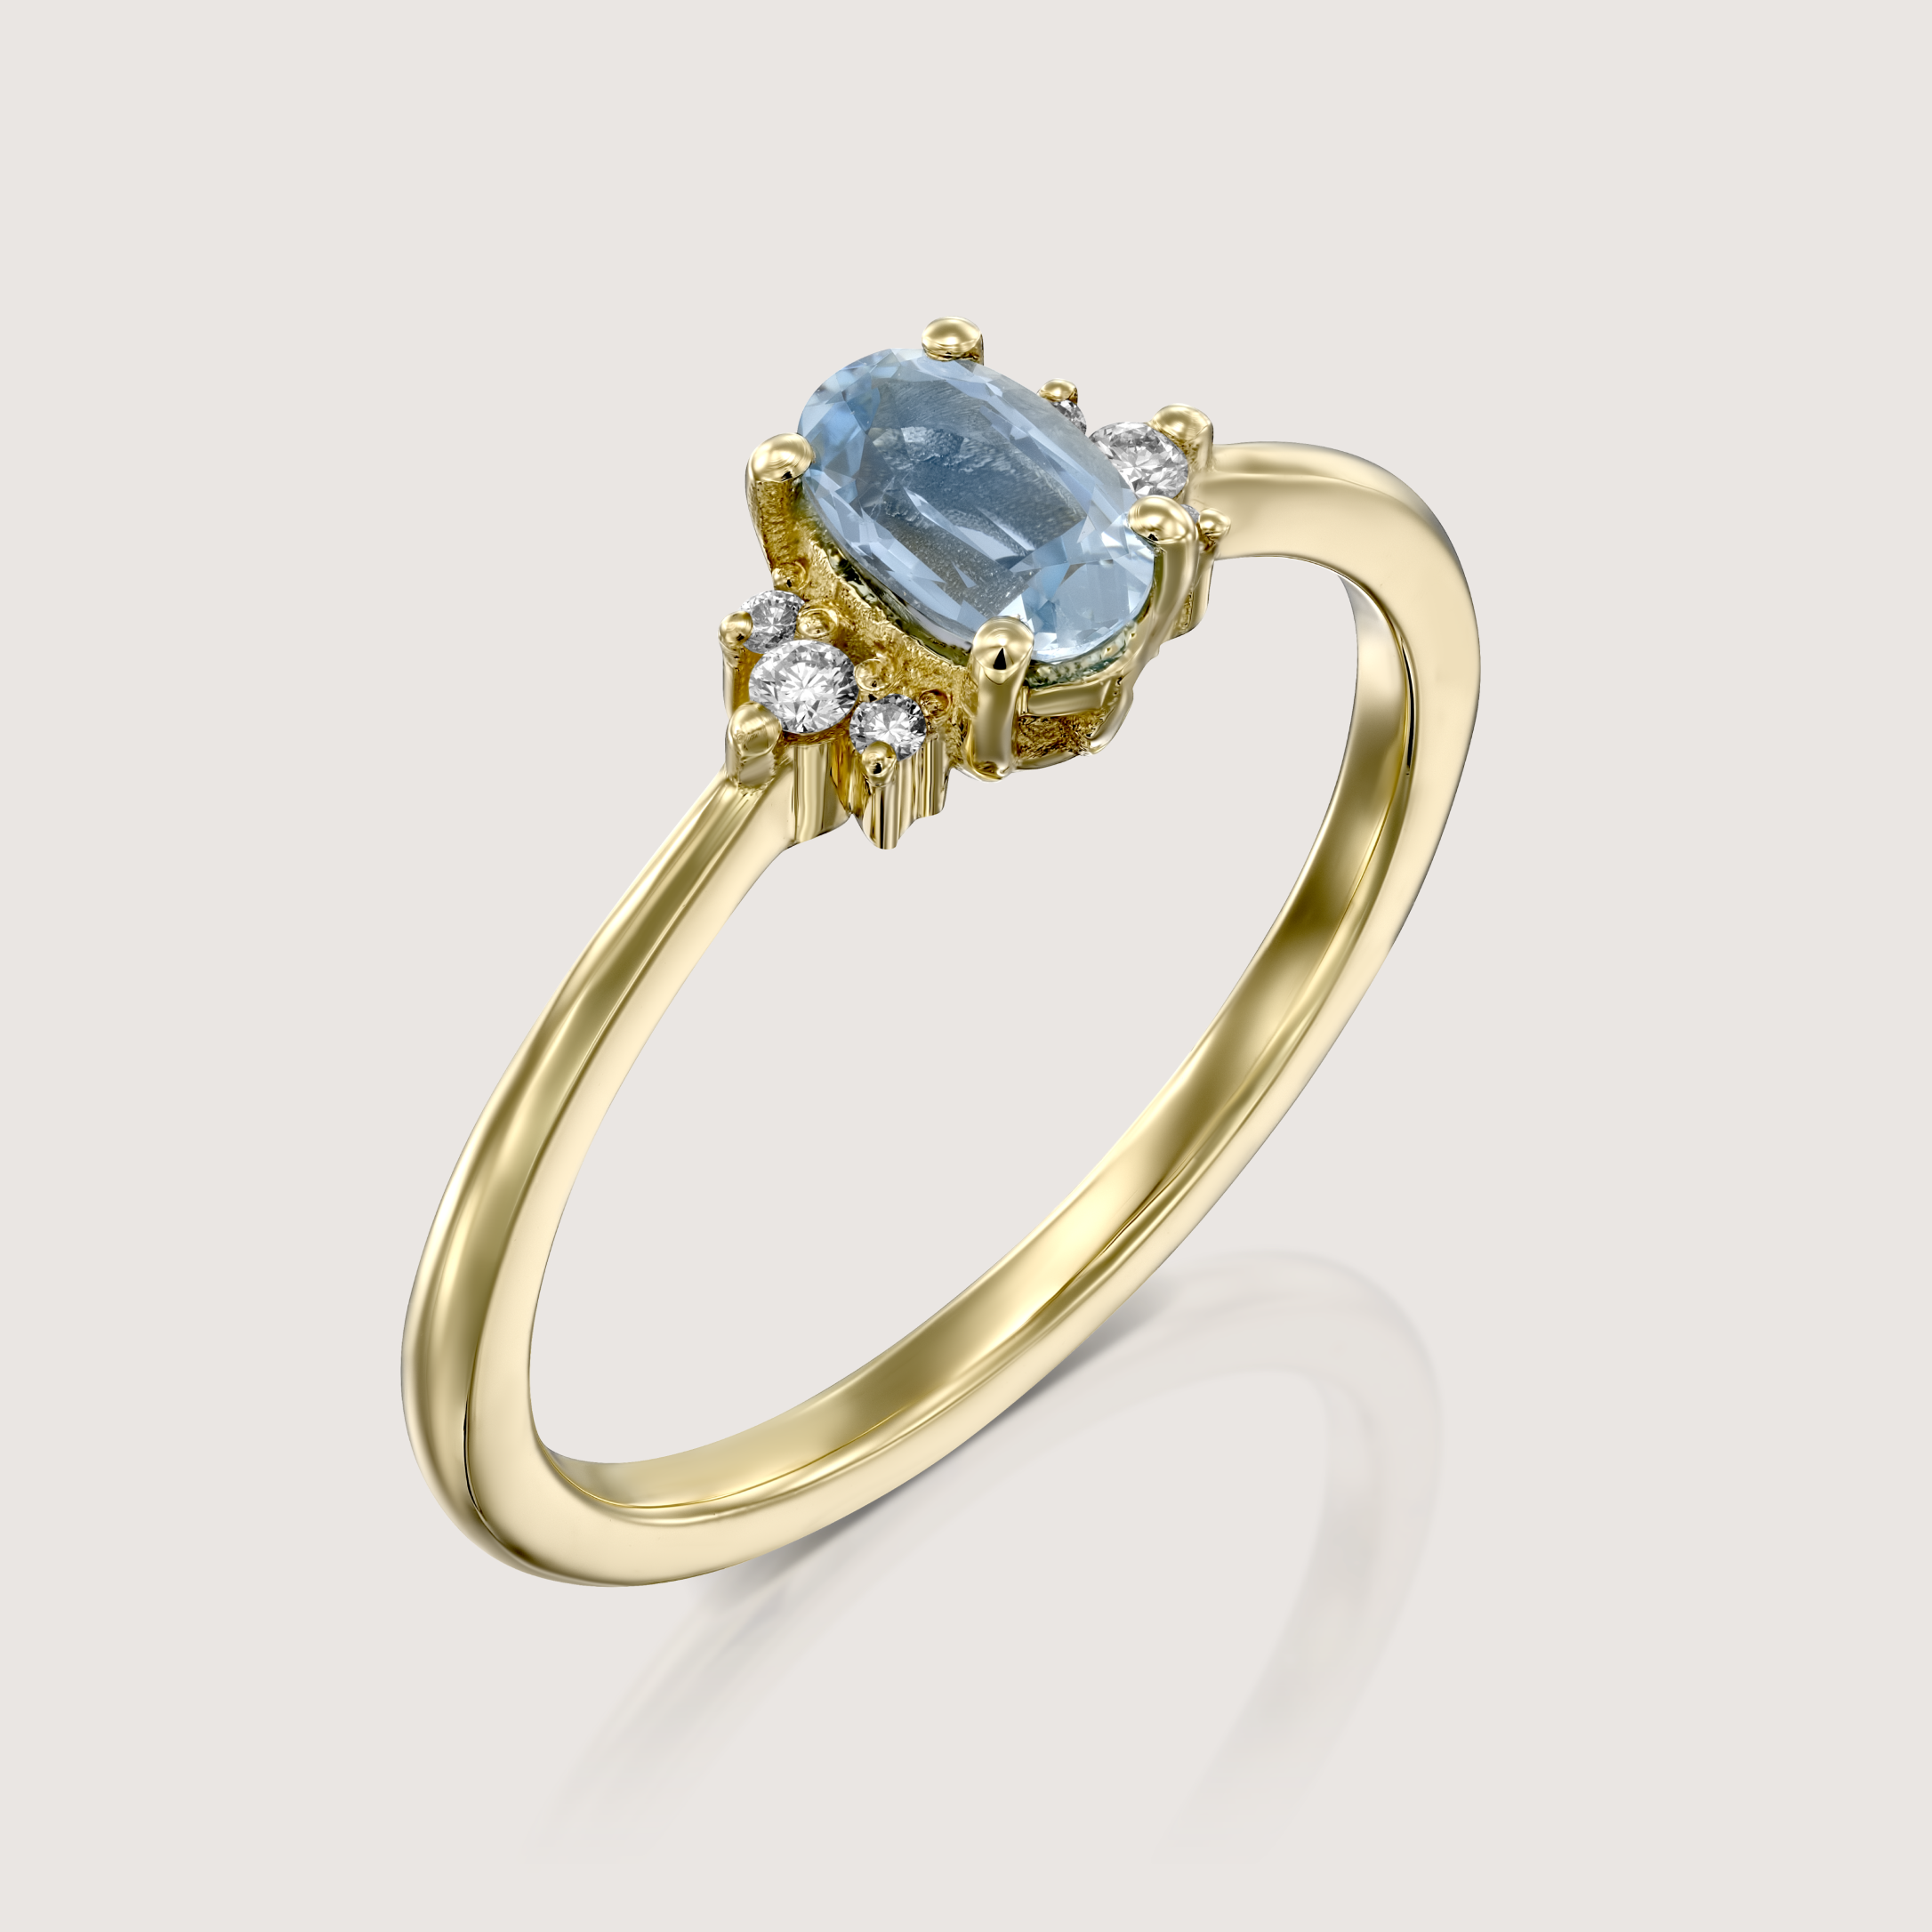 Ella Ring with Aquamarine and Diamonds